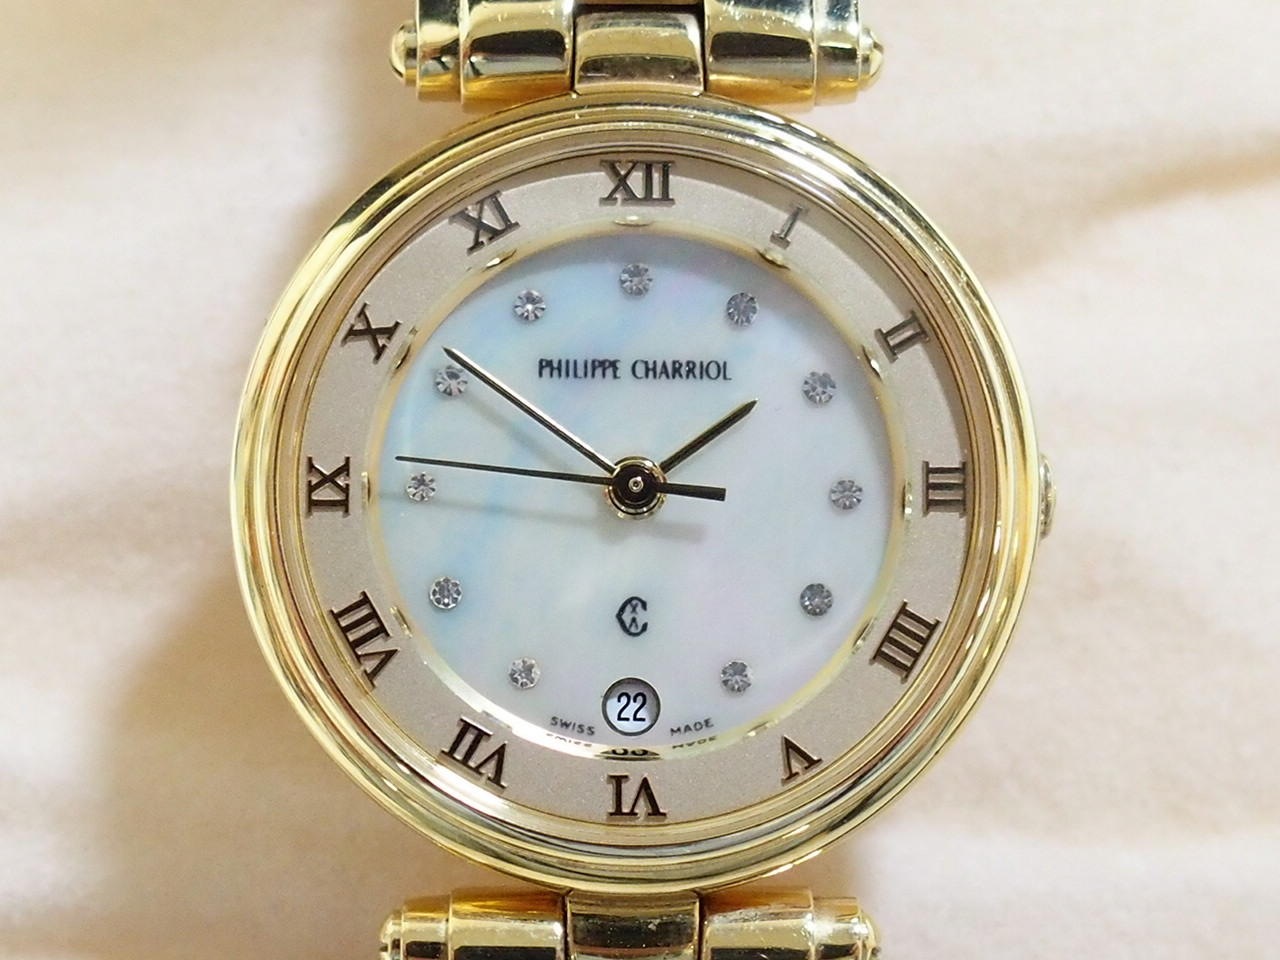 フィリップ・シャリオール レディース腕時計 クォーツ シェル文字盤 11Pダイヤ デイト ワイヤー PHILIPPE CHARRIOL 買取さ